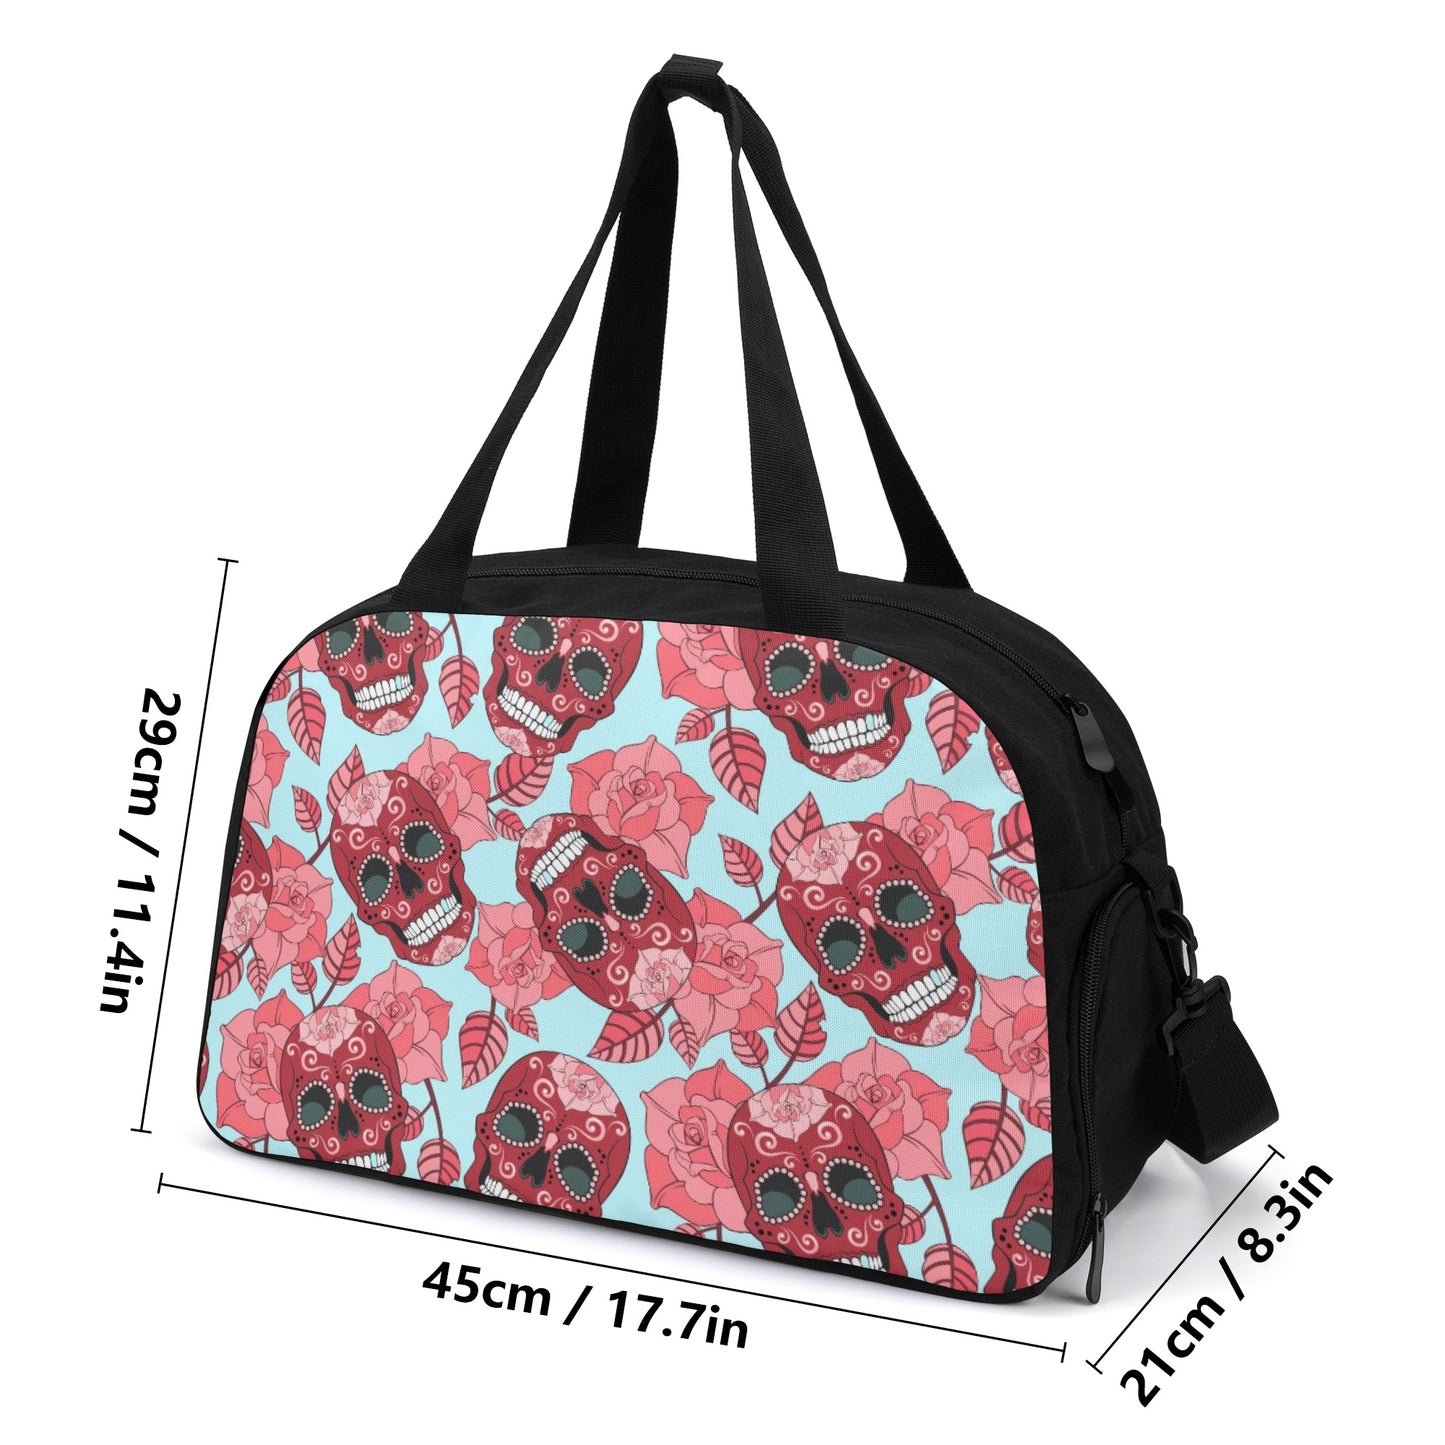 Rose floral sugar skull travel bag Travel Luggage Bag